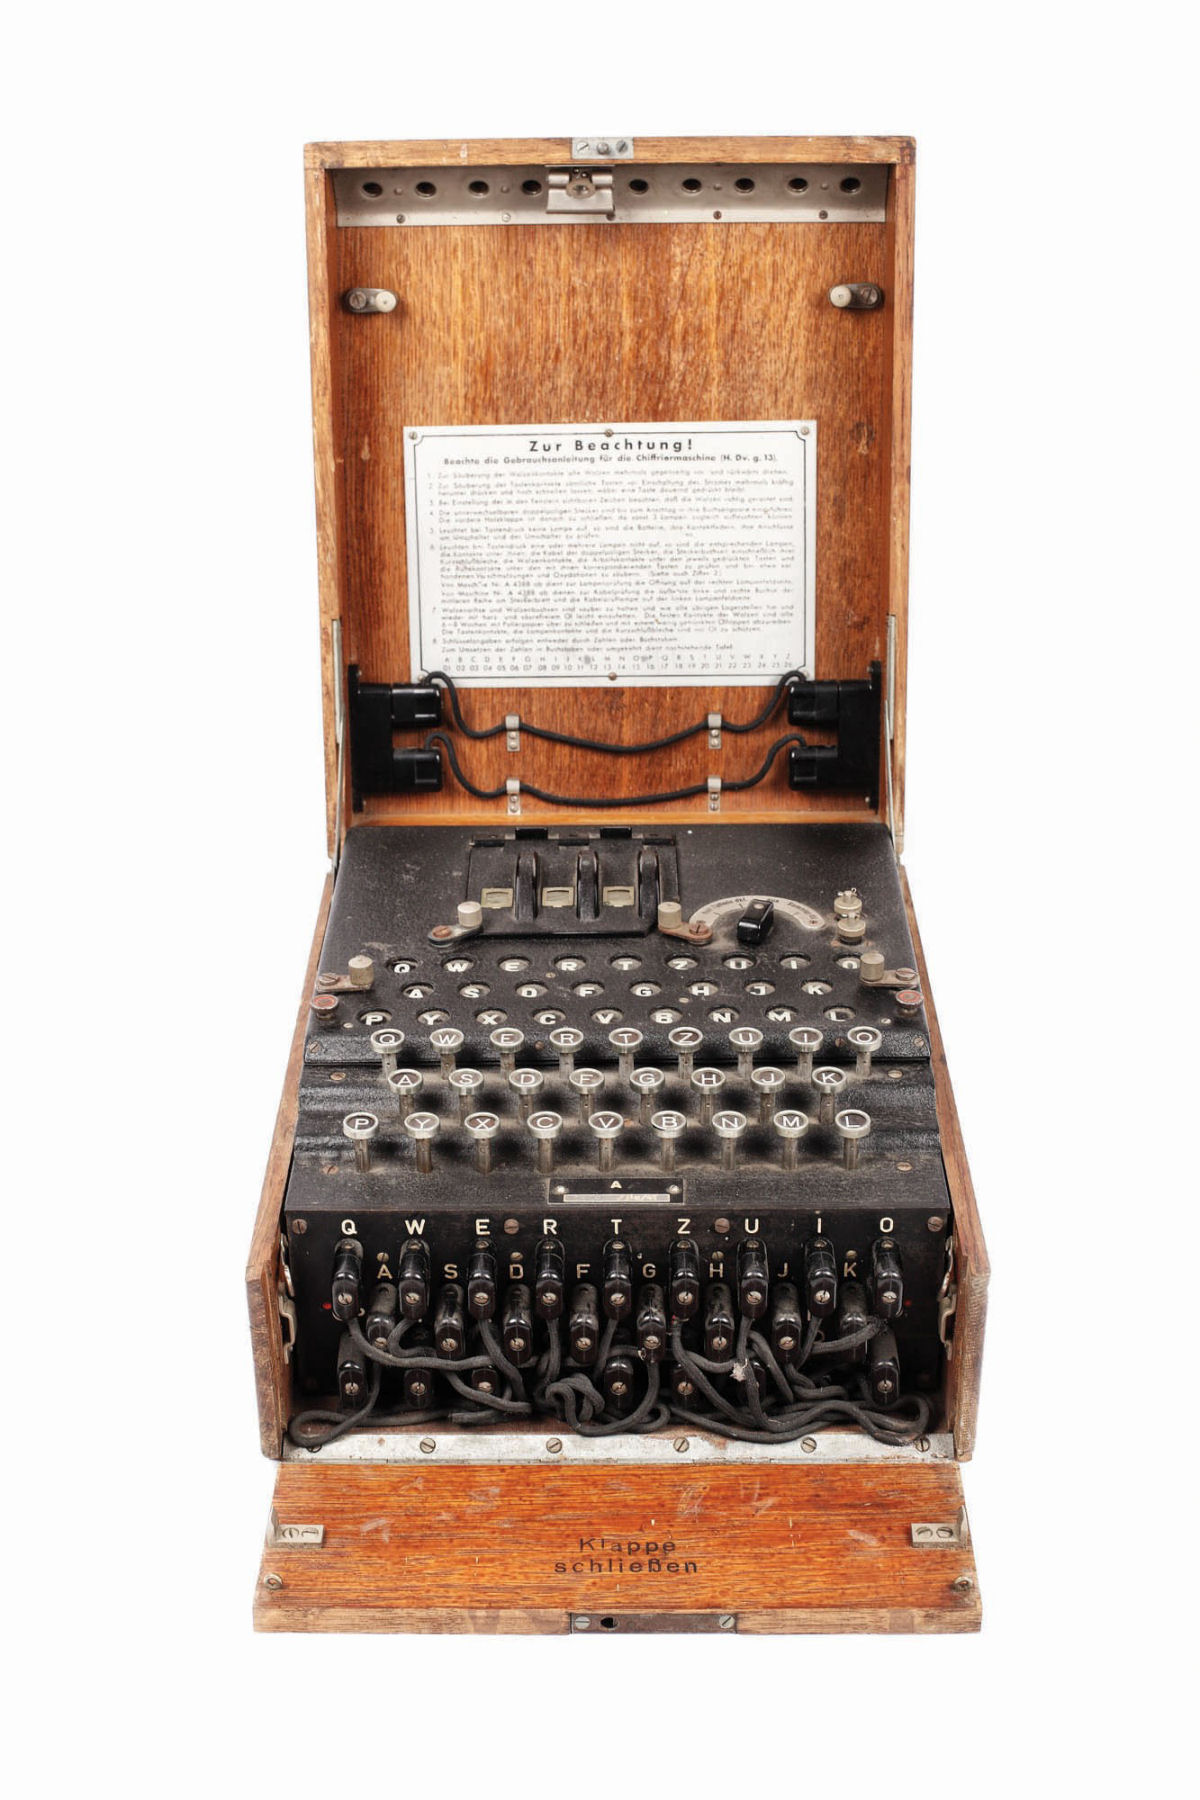 Encontrou uma das míticas máquinas Enigma em uma feira, comprou por 100 dólares, e leiloou por 50.000 05